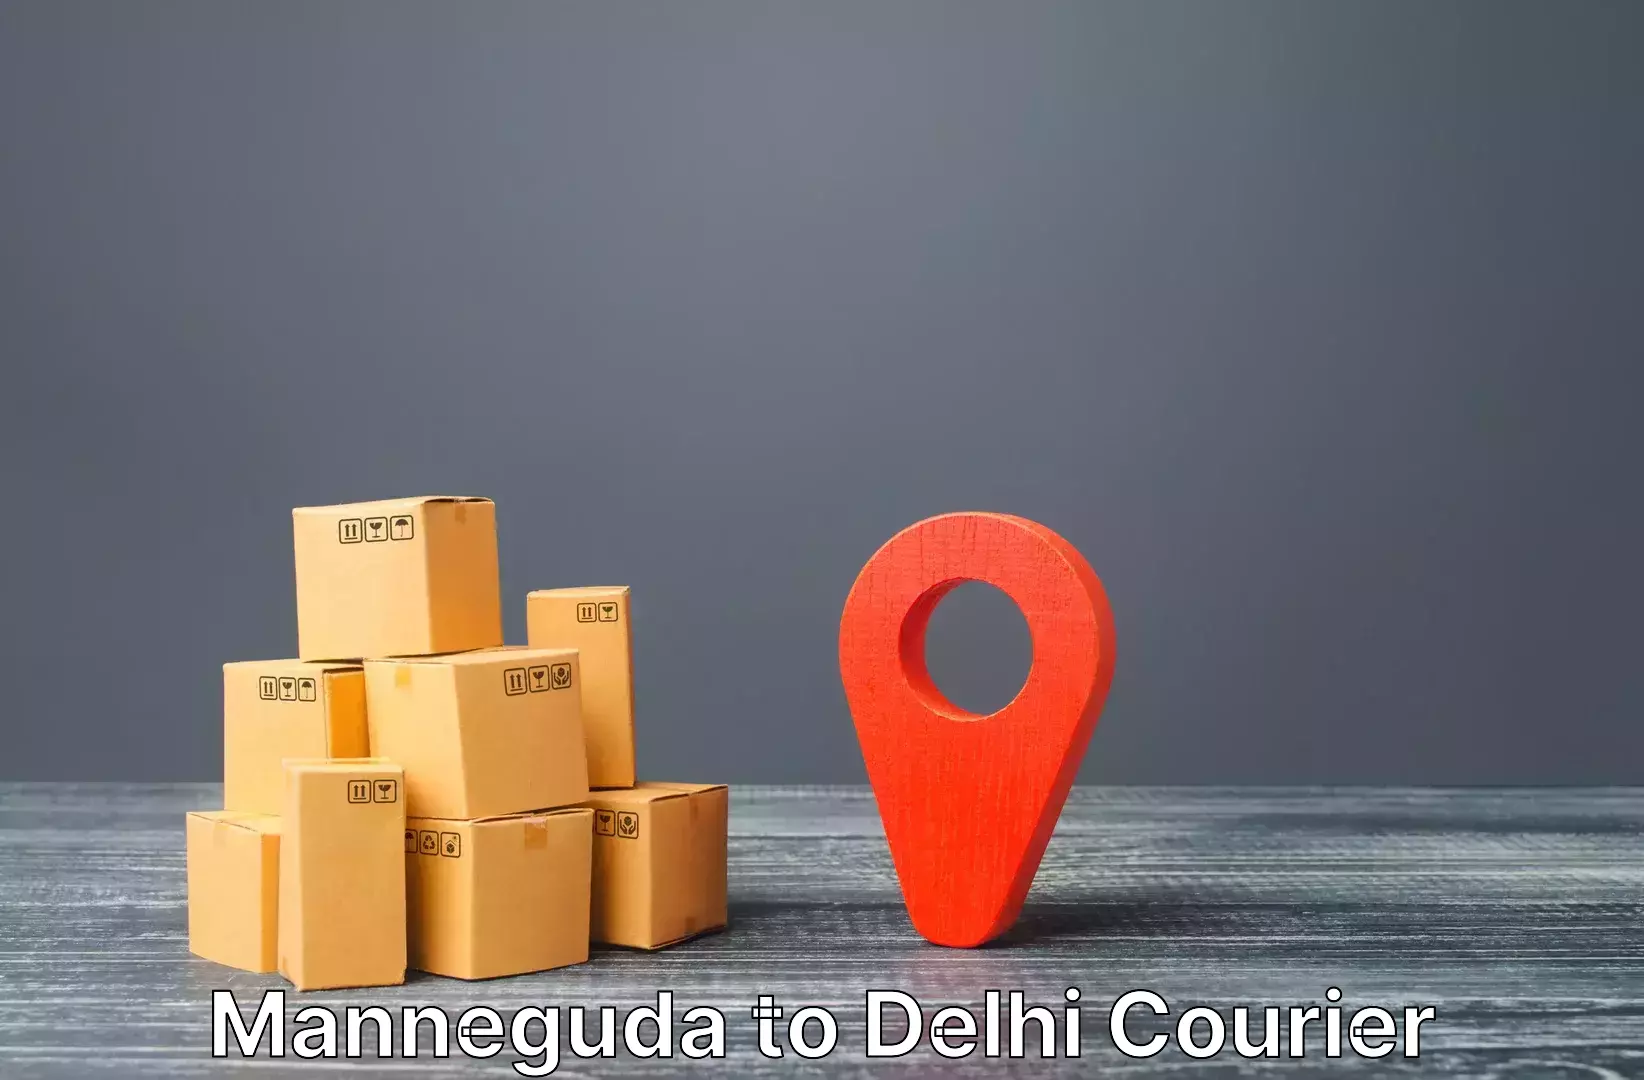 Luggage transfer service Manneguda to Delhi